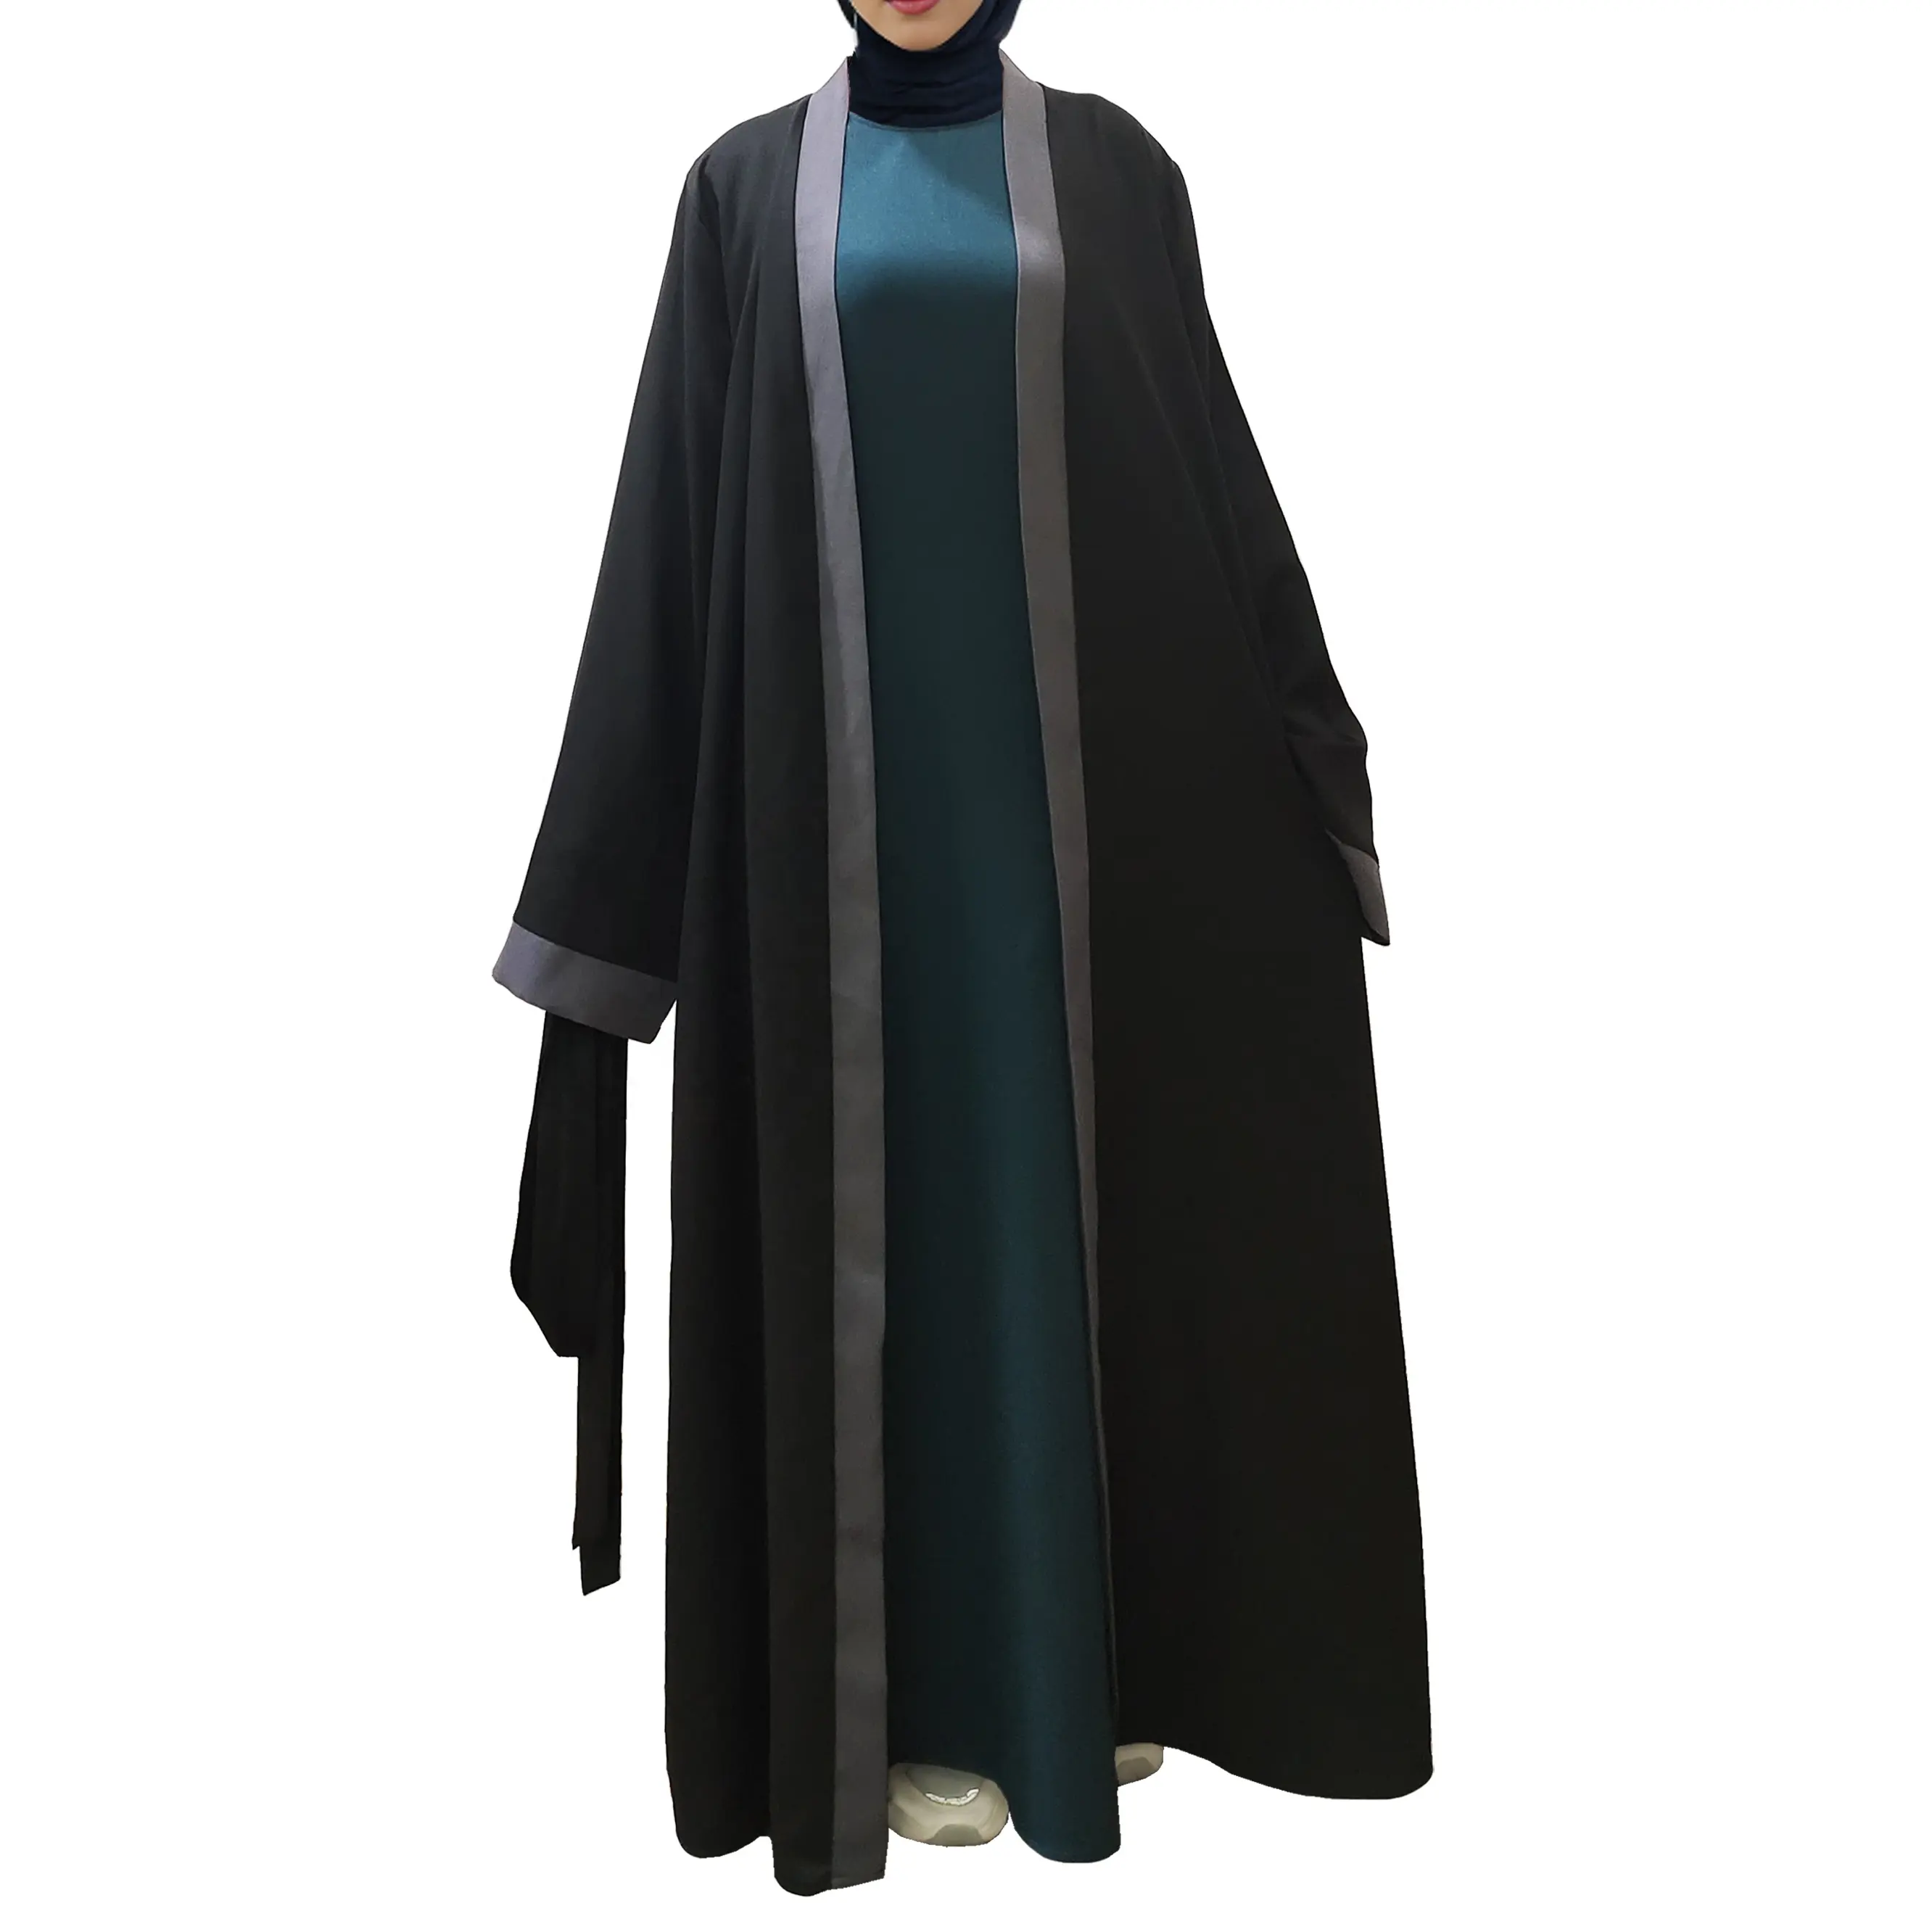 Nuovo arrivo Top più venduto fornitore di abiti islamici donna manica lunga completamente aperta Abaya Muslim abito da donna